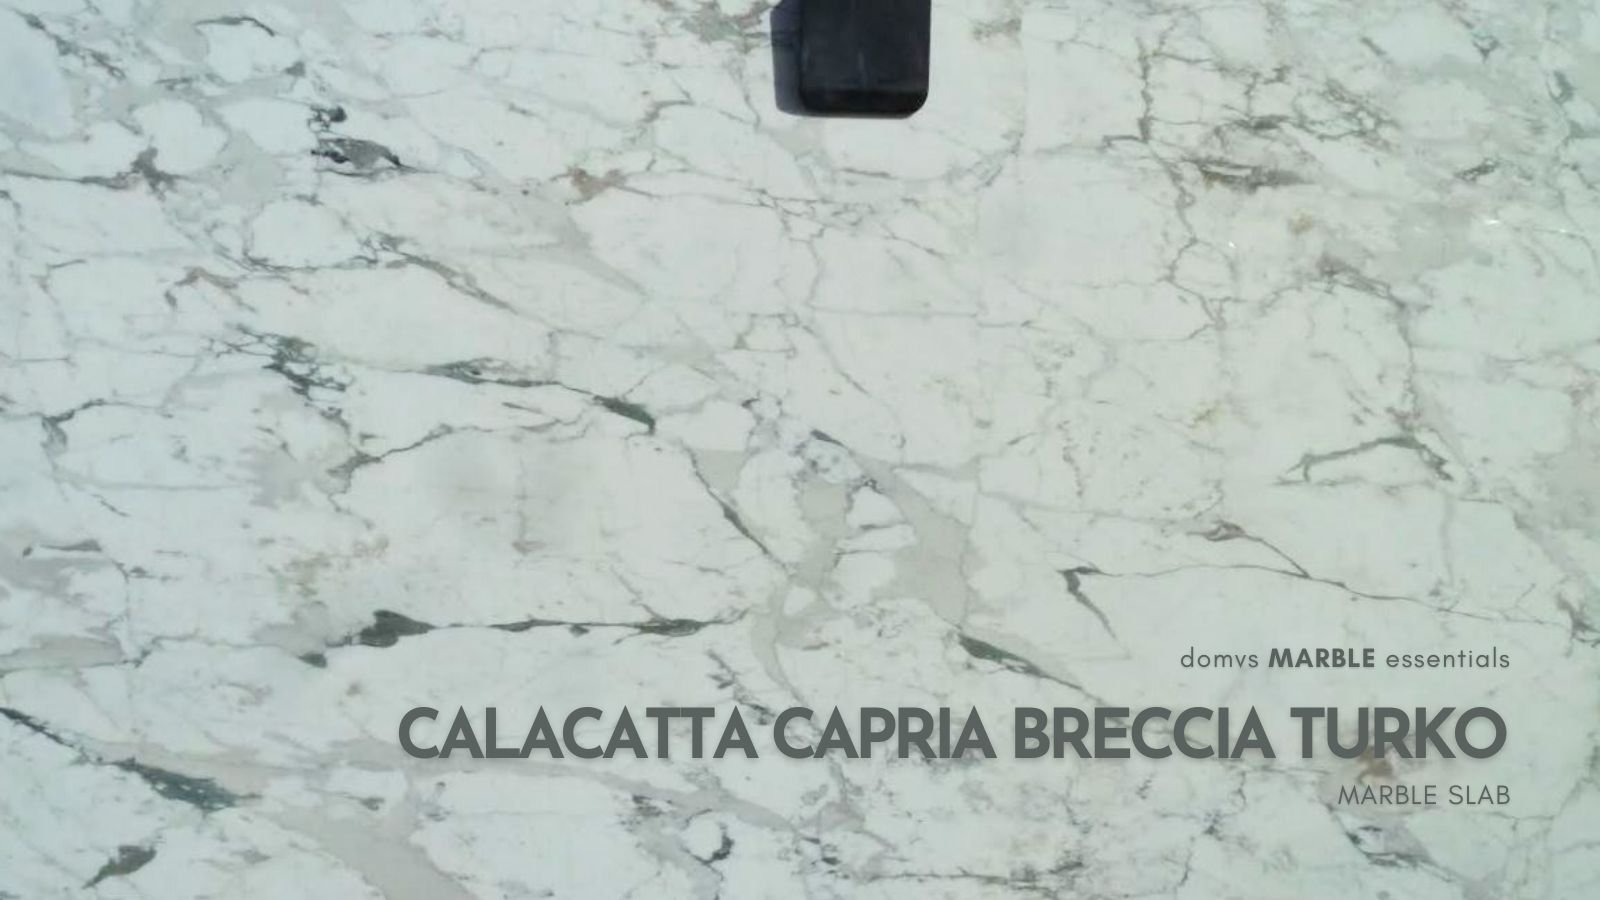 Calacatta Capria Breccia Turko Marble Slab